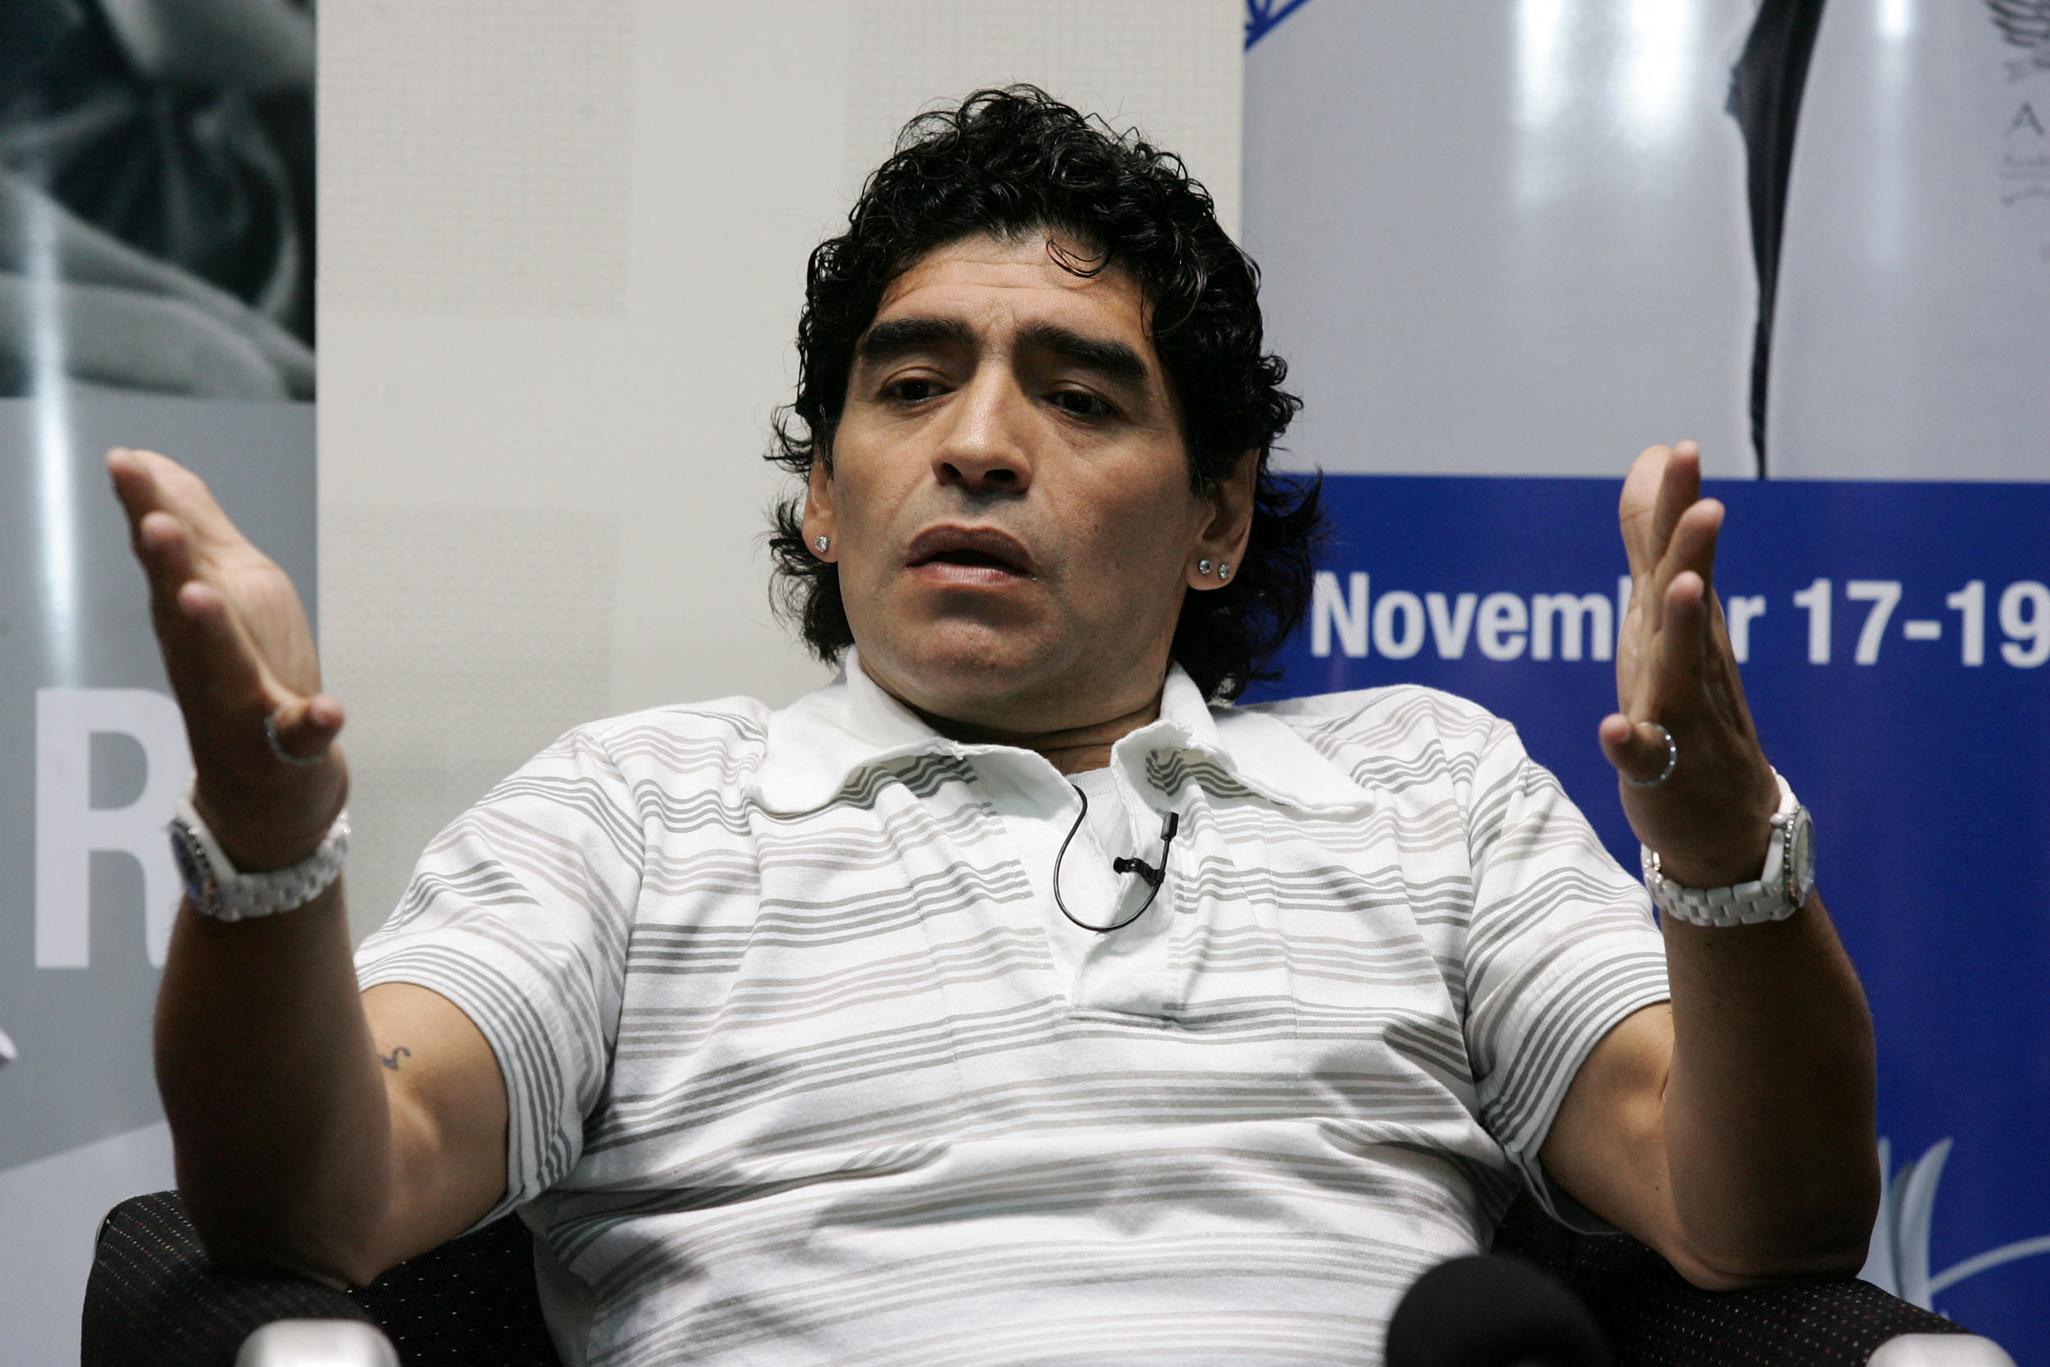 Előkerült egy videó, amin Maradona egy 16 éves lánnyal fekszik az ágyban, a nő szerint a focista drogokkal tömte és kihasználta